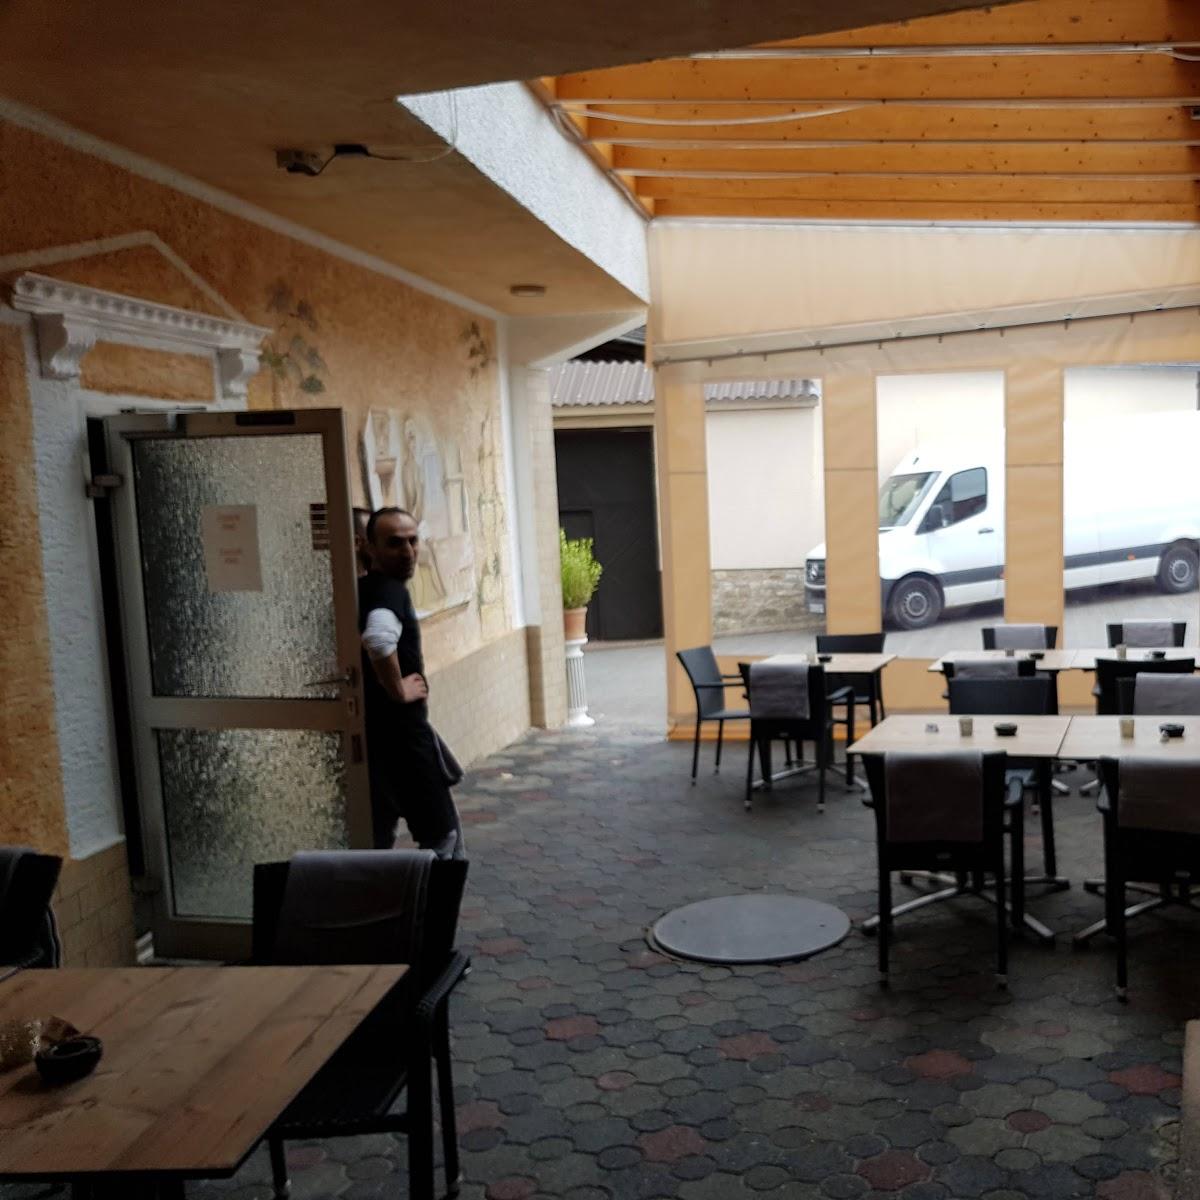 Restaurant "Restaurant Delphi" in  Sulzheim